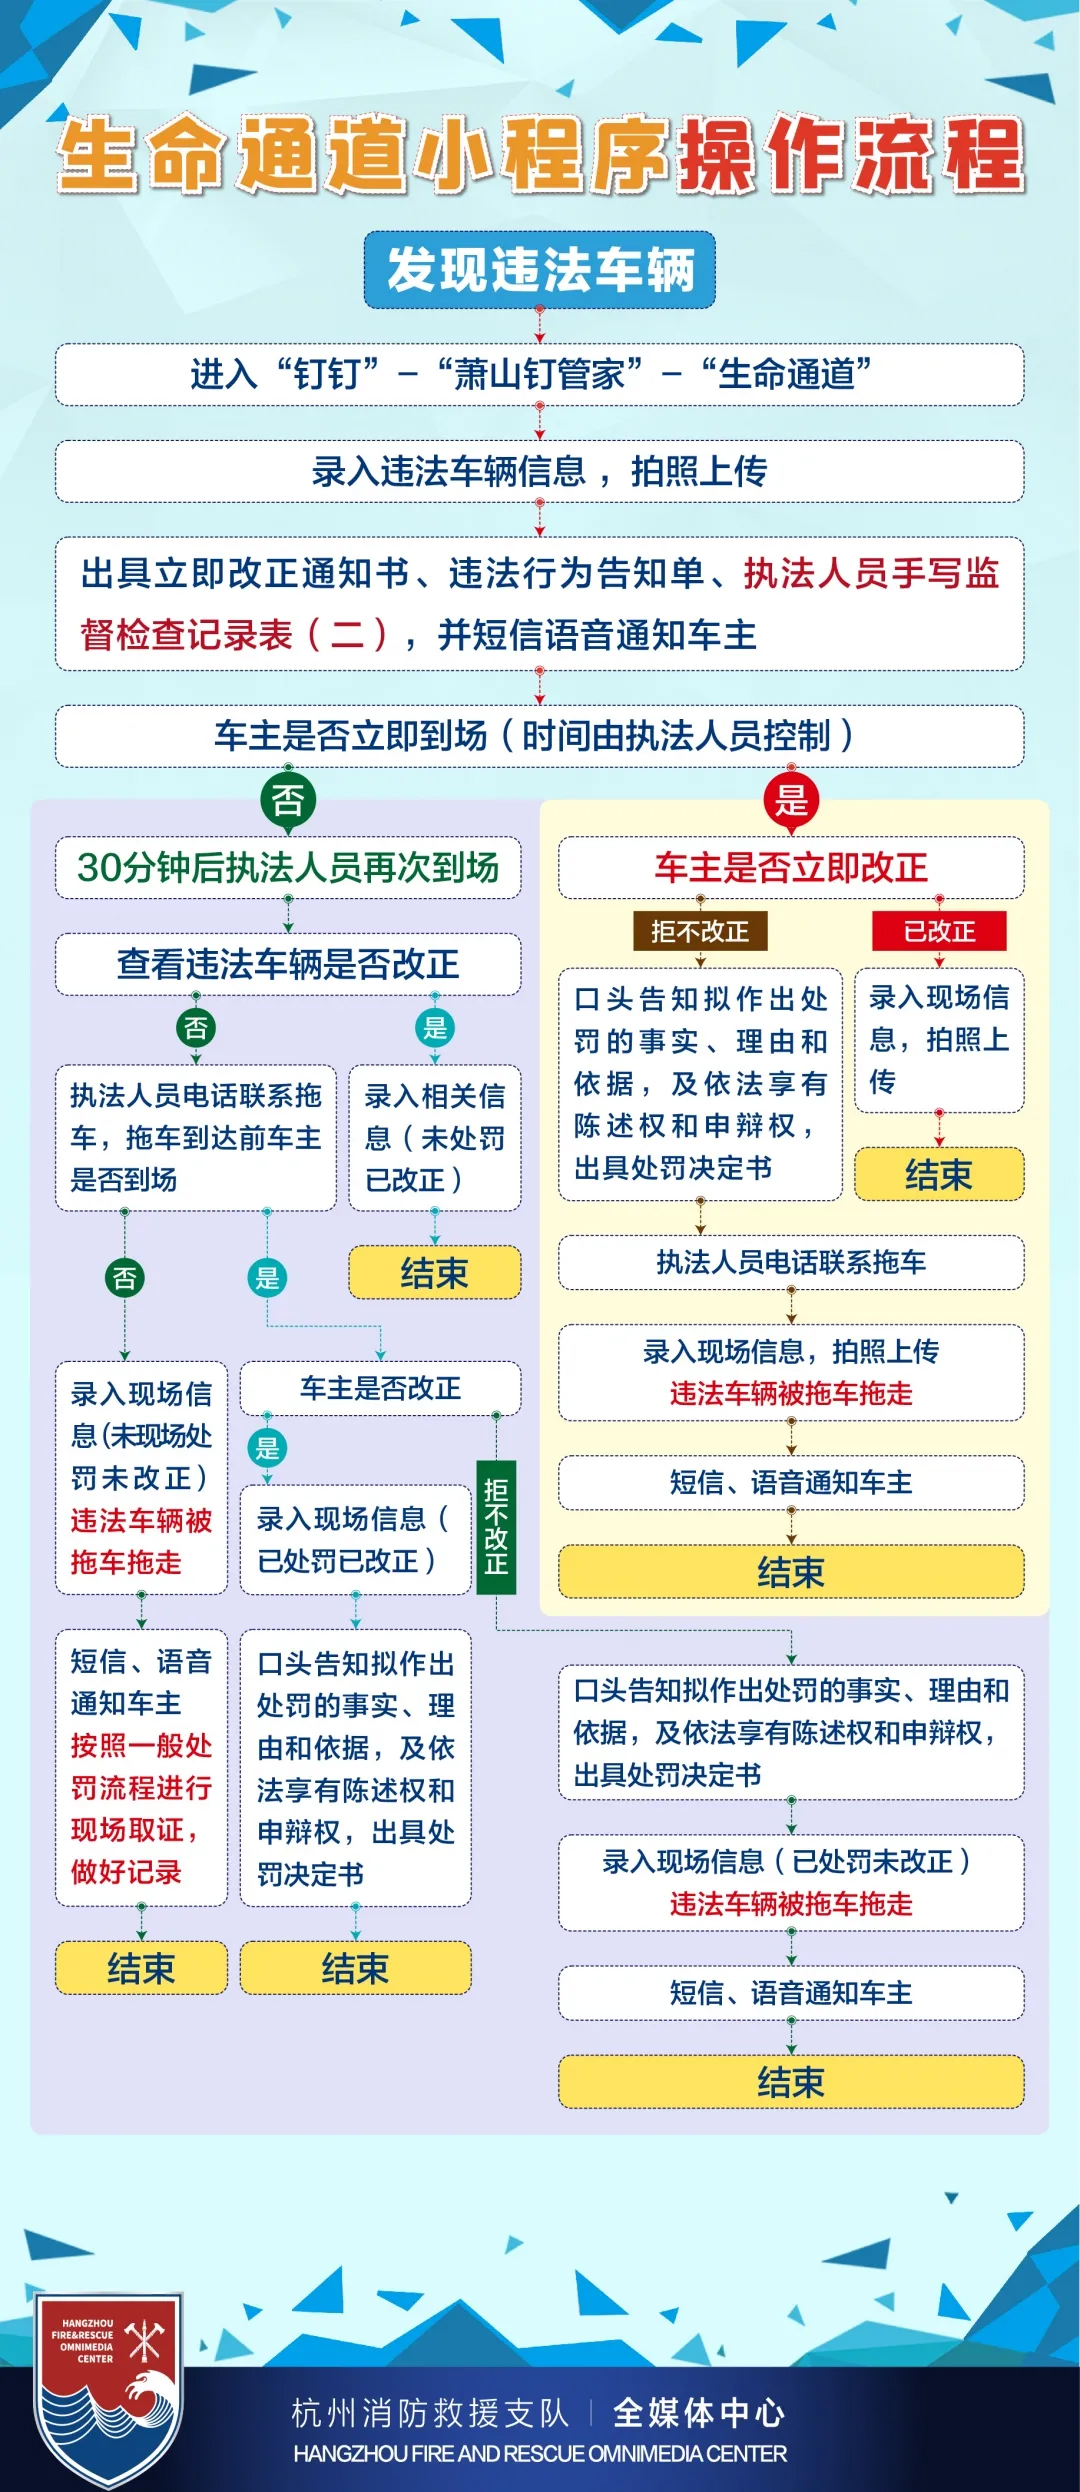 杭州消防在全省率先试点小区生命通道的贴单式违停执法